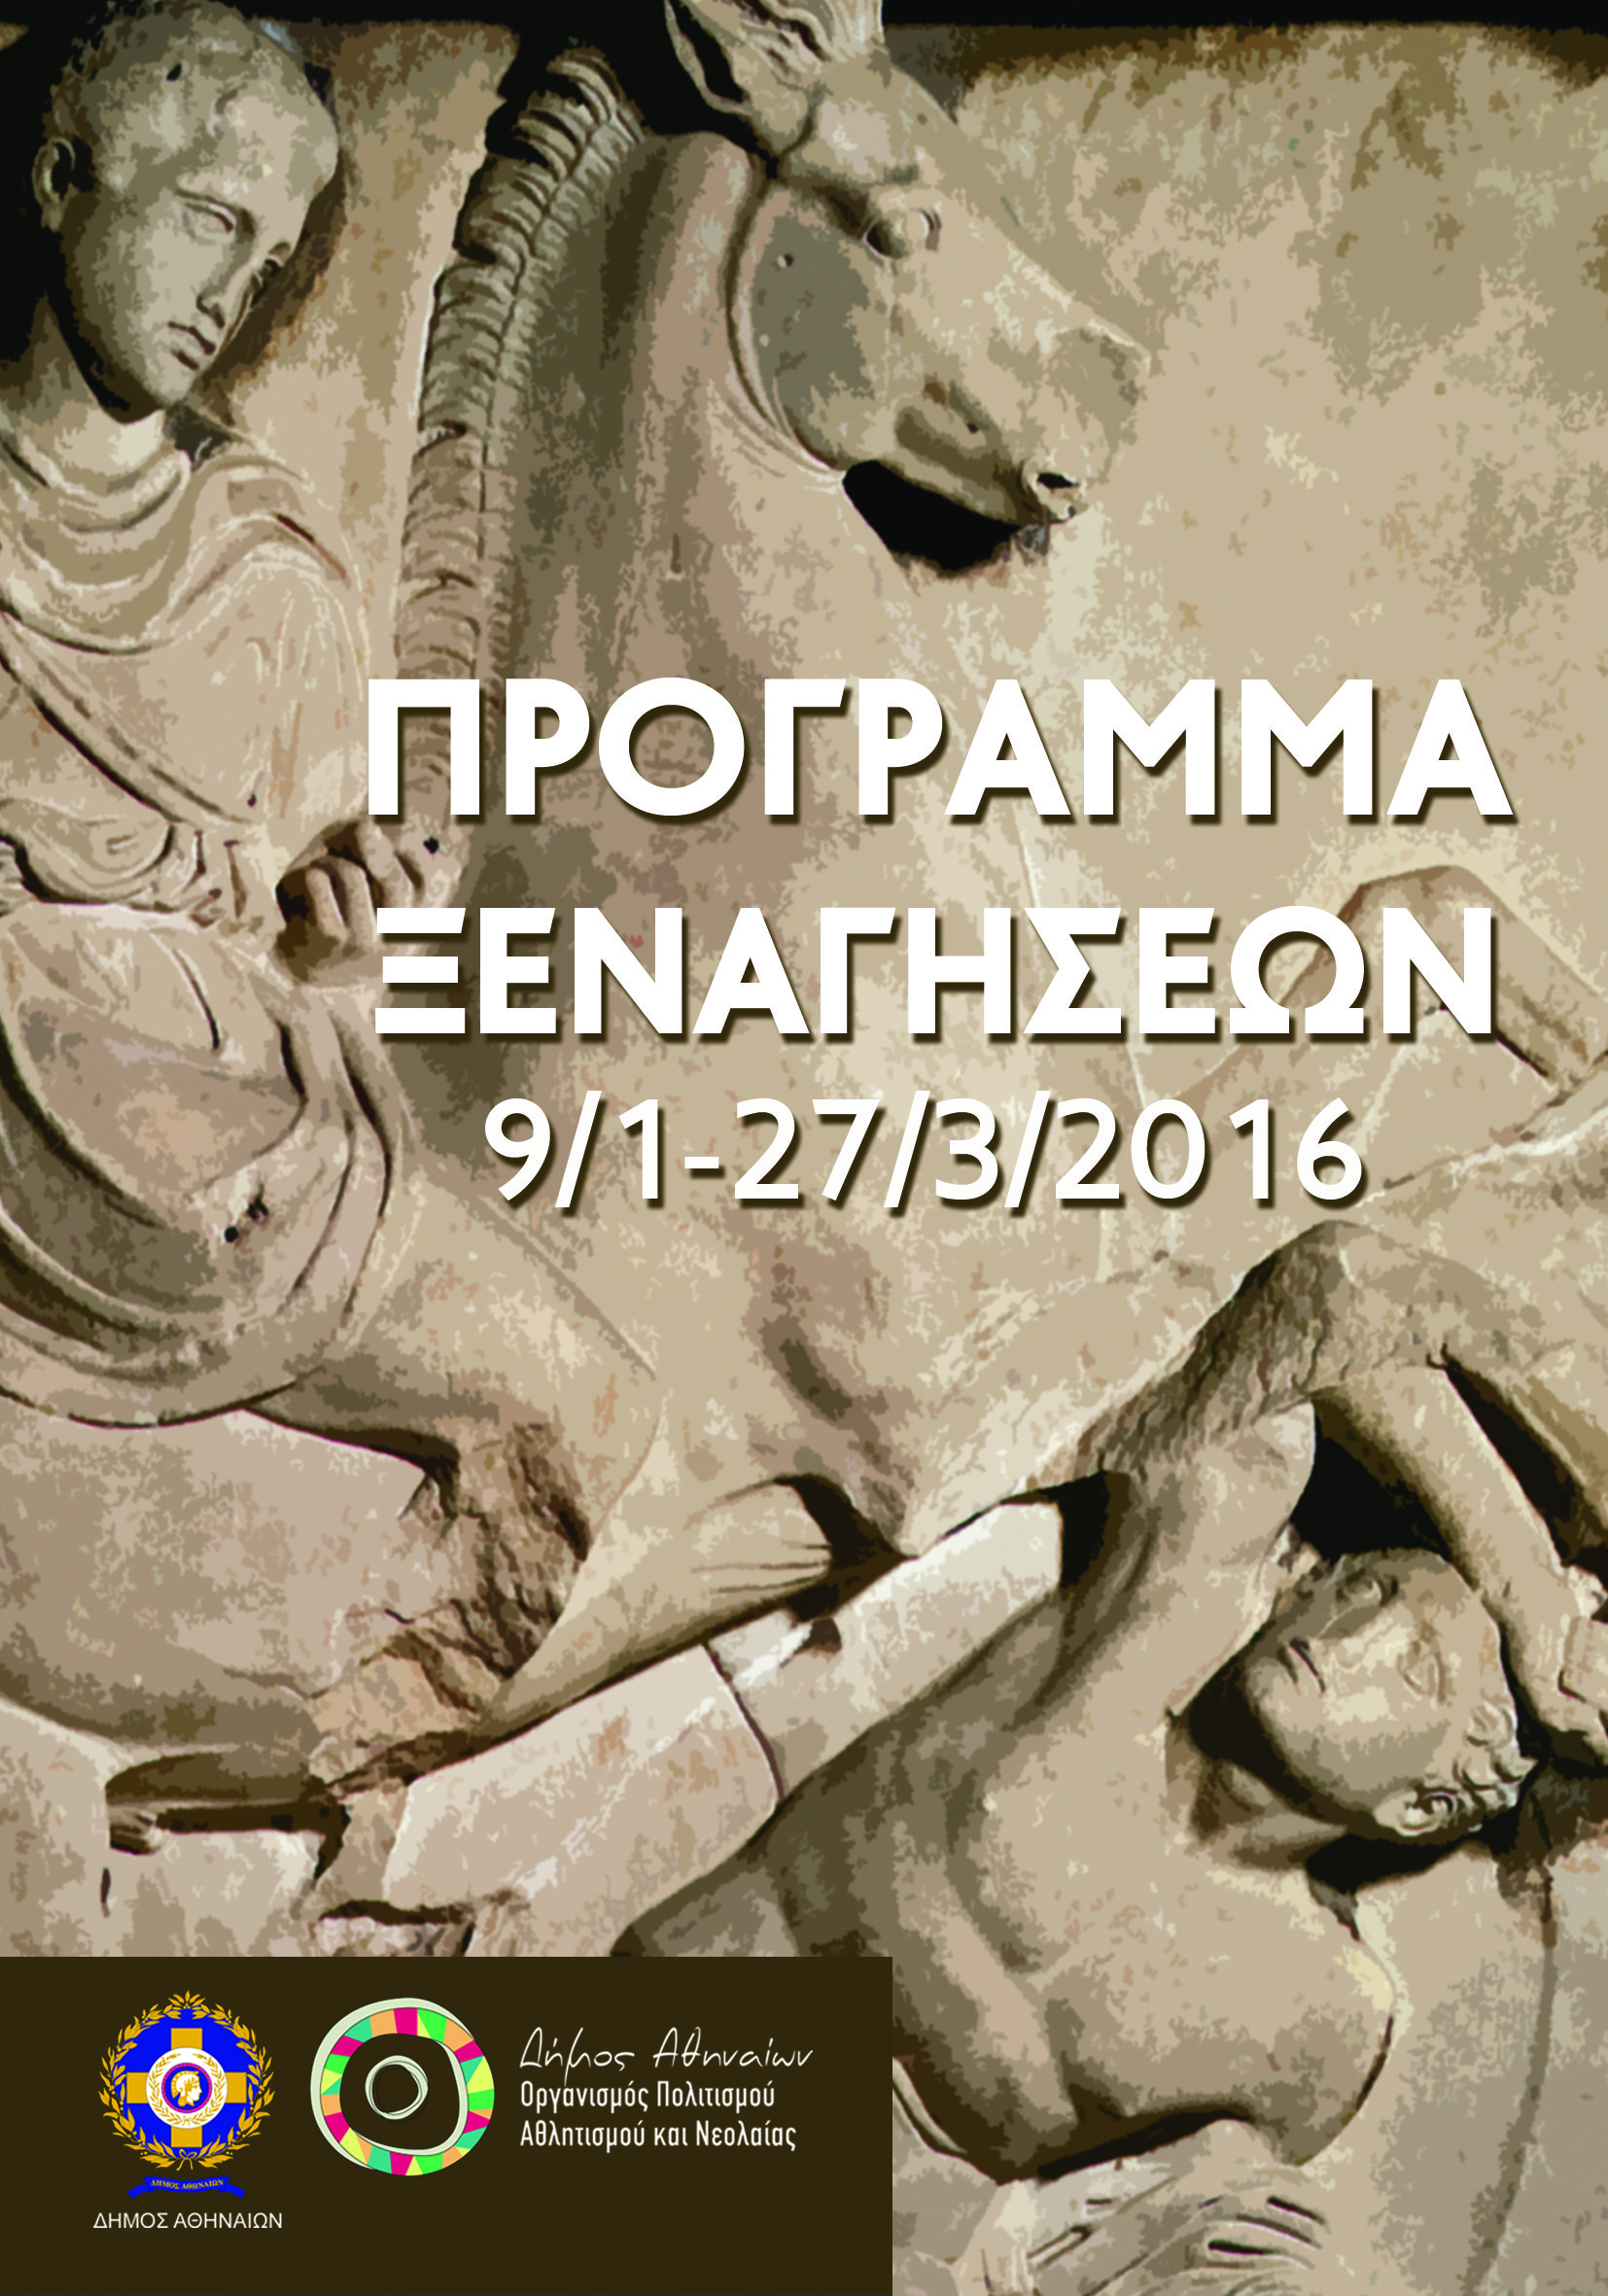 Η αγαπημένη συνήθεια των Αθηναίων, οι δωρεάν ξεναγήσεις είναι εδώ